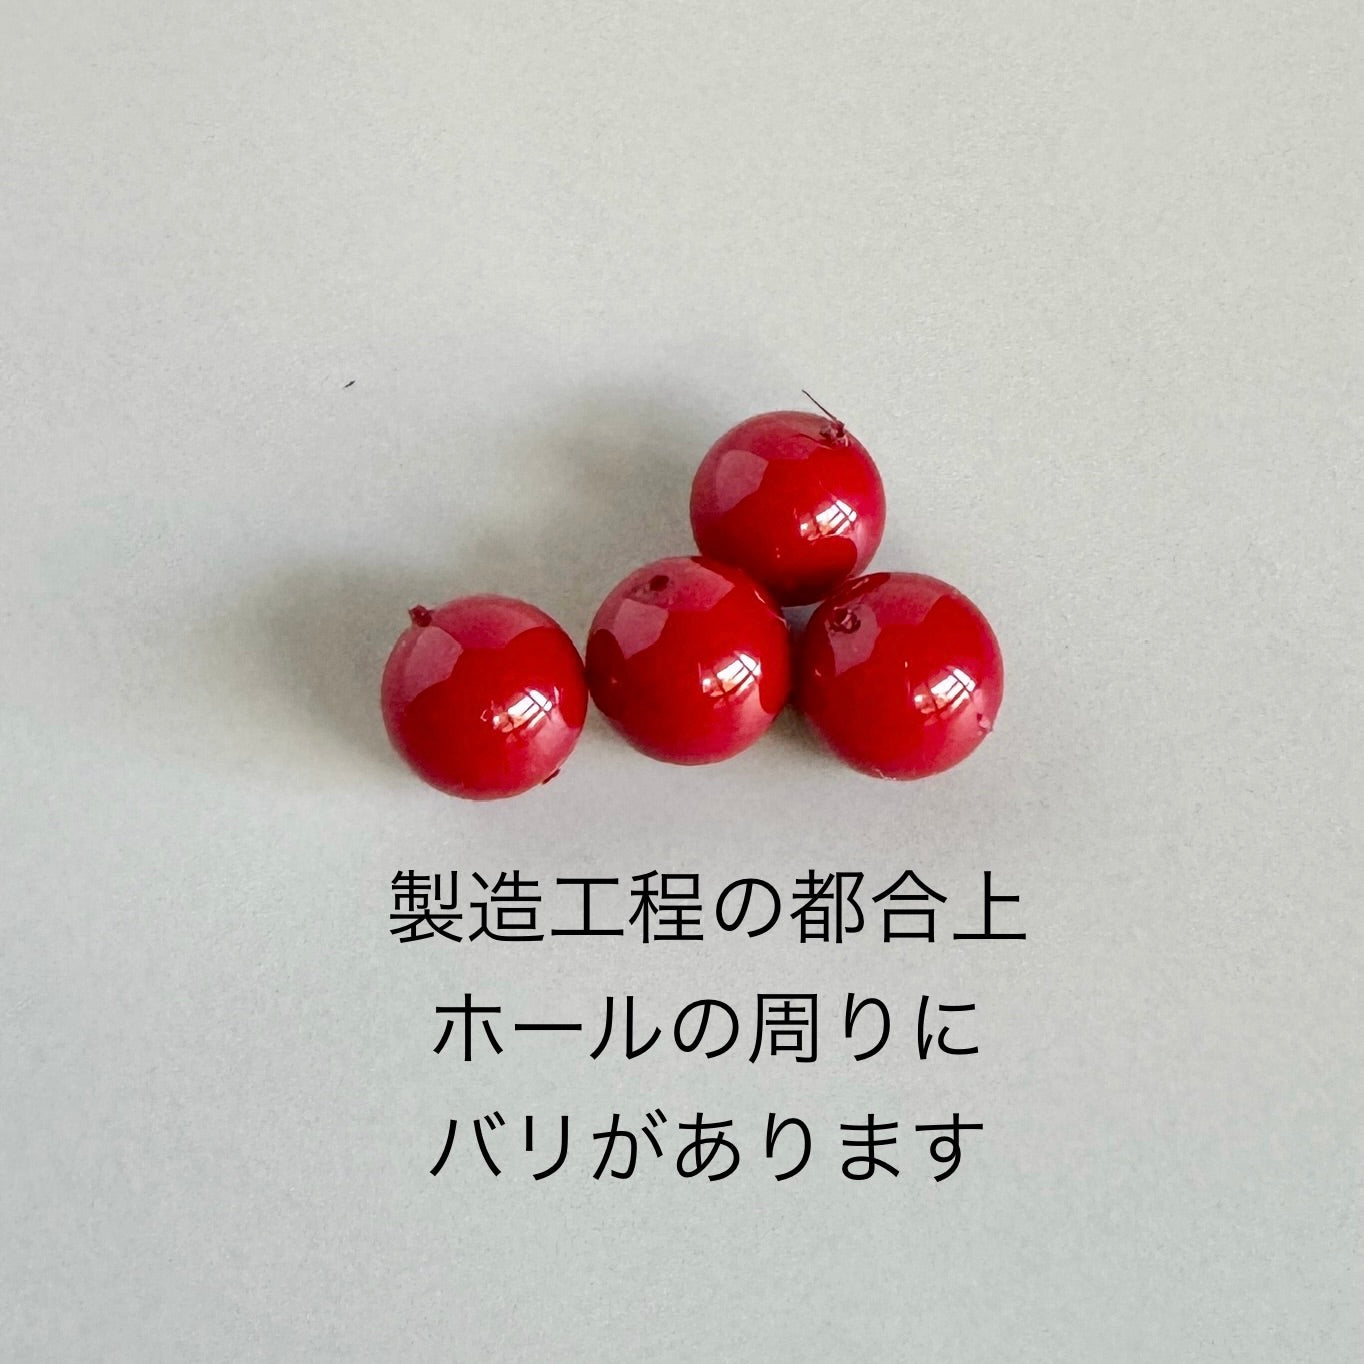 【Made in Japan 】日本製ガラスビーズ【AKADAMA】(赤珠)  8mm 【20個 or 1連】